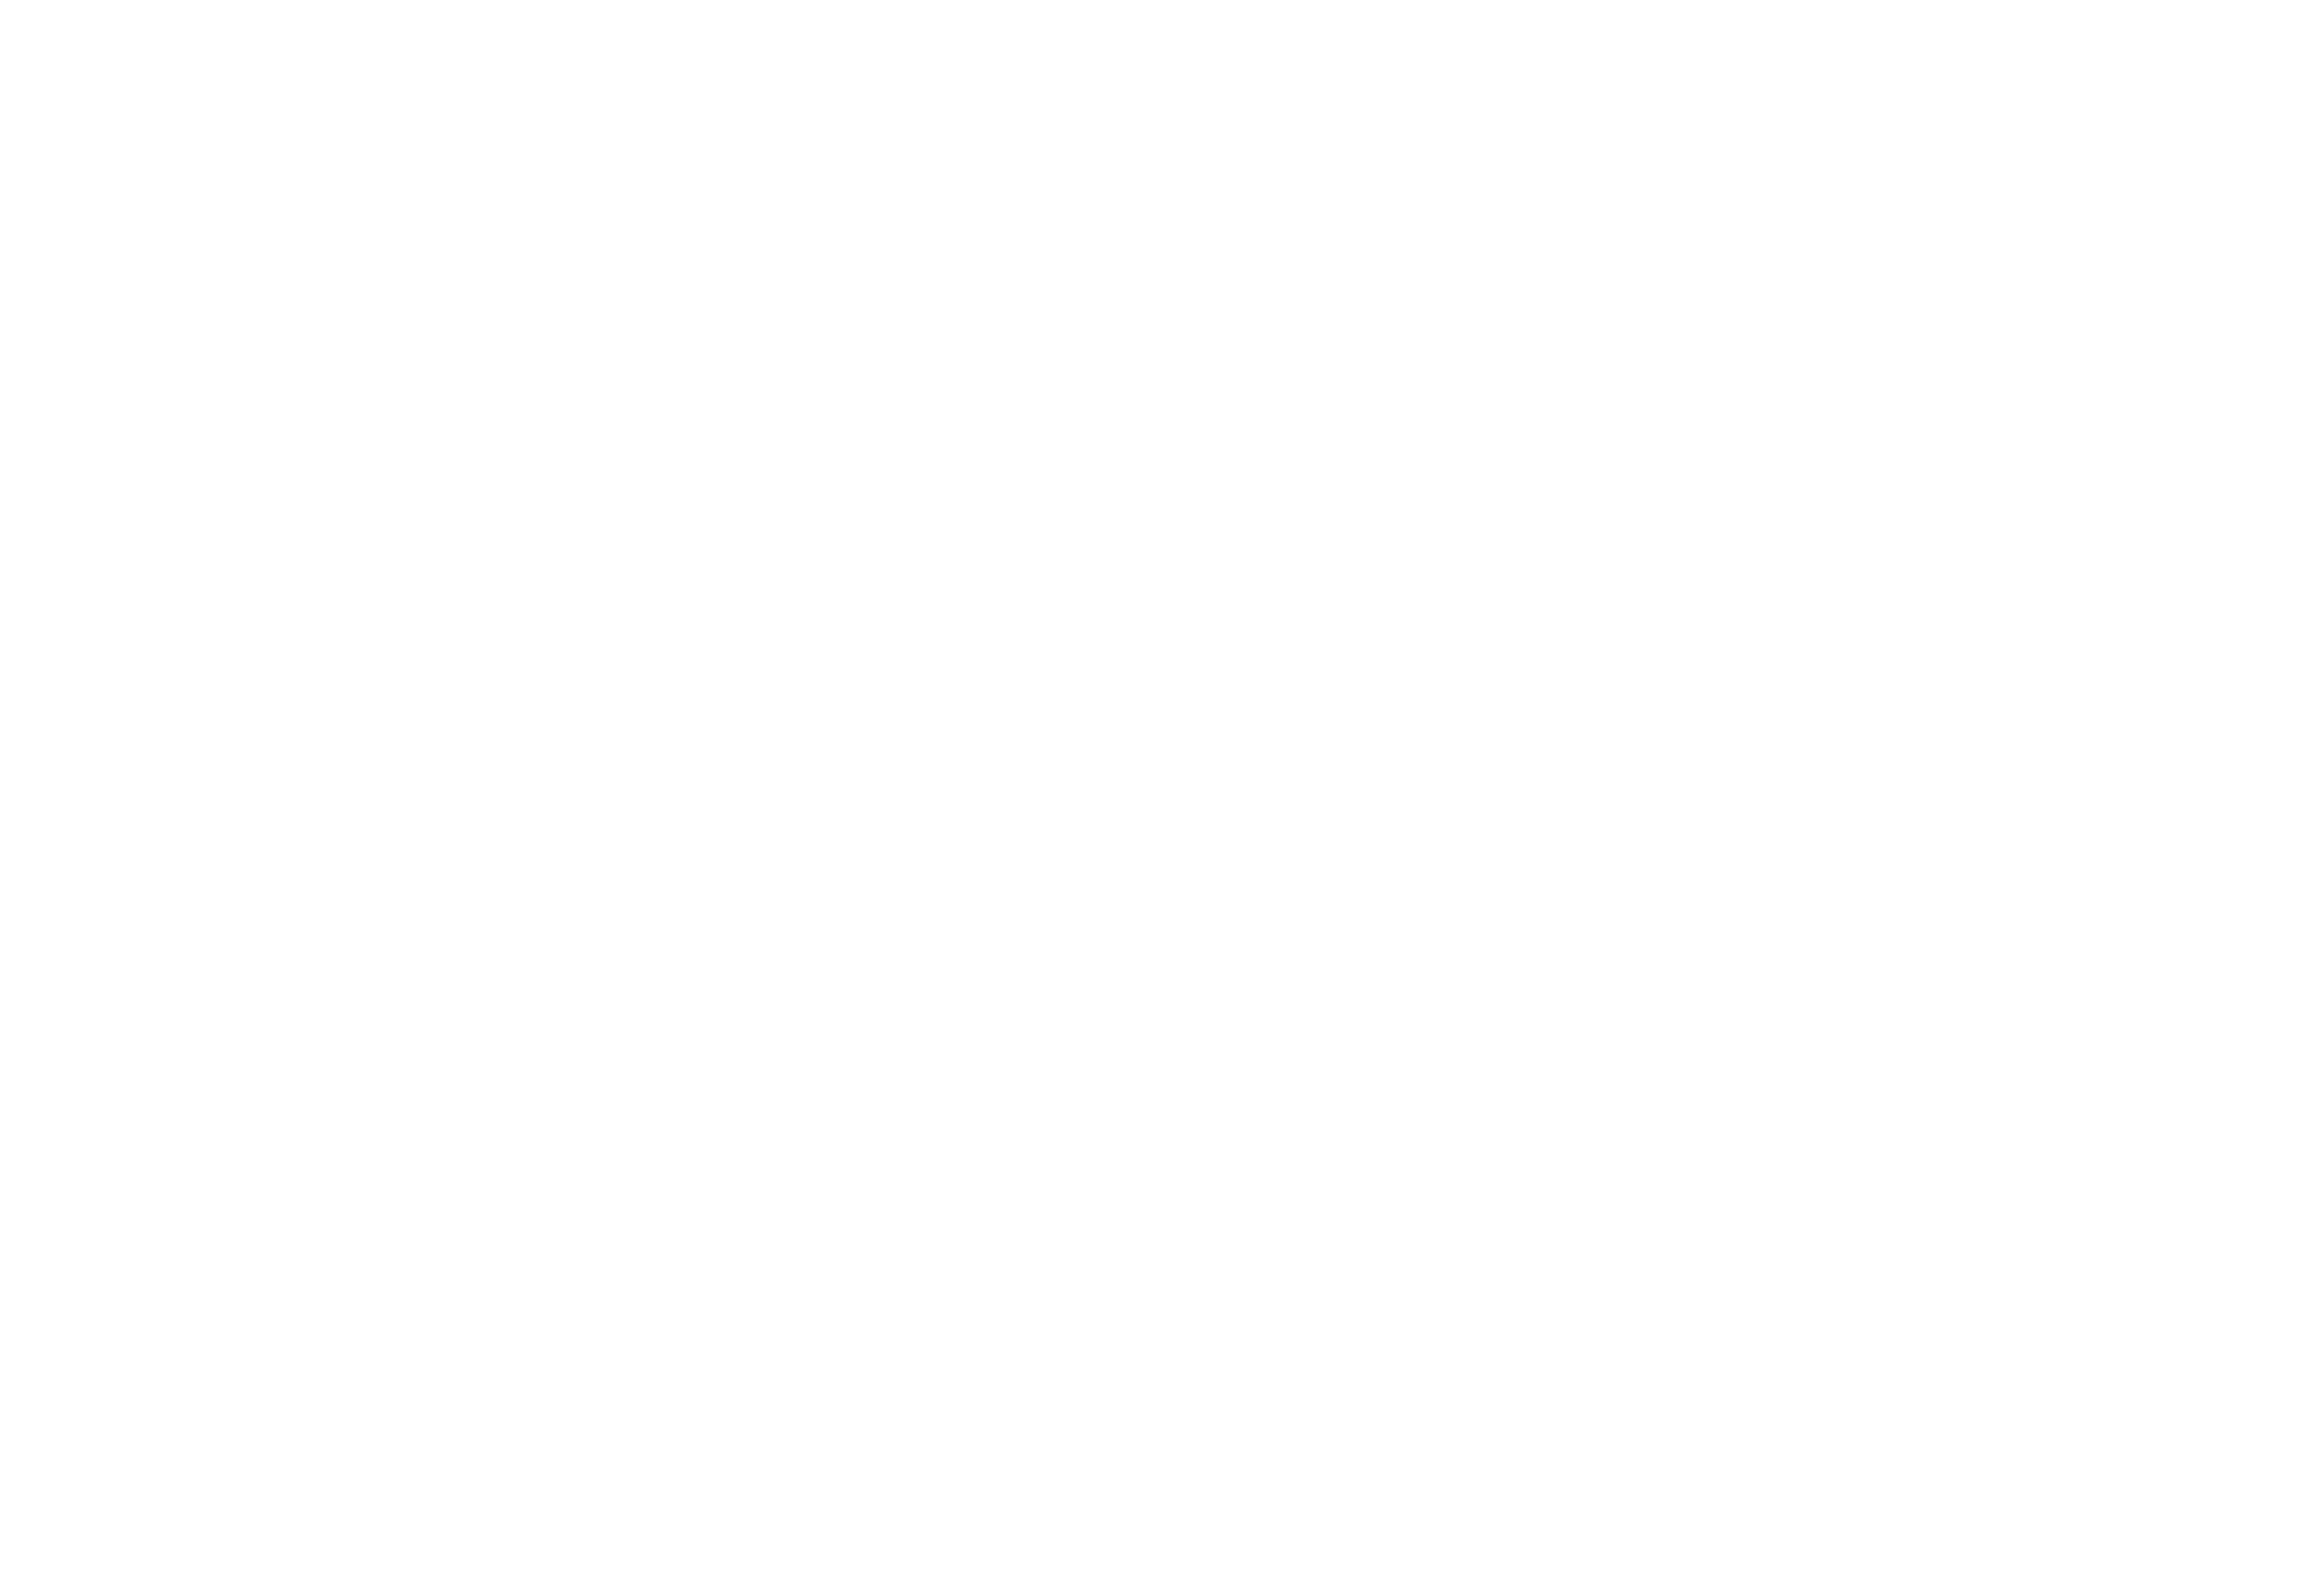 Biodiversity Hub International (BHI)